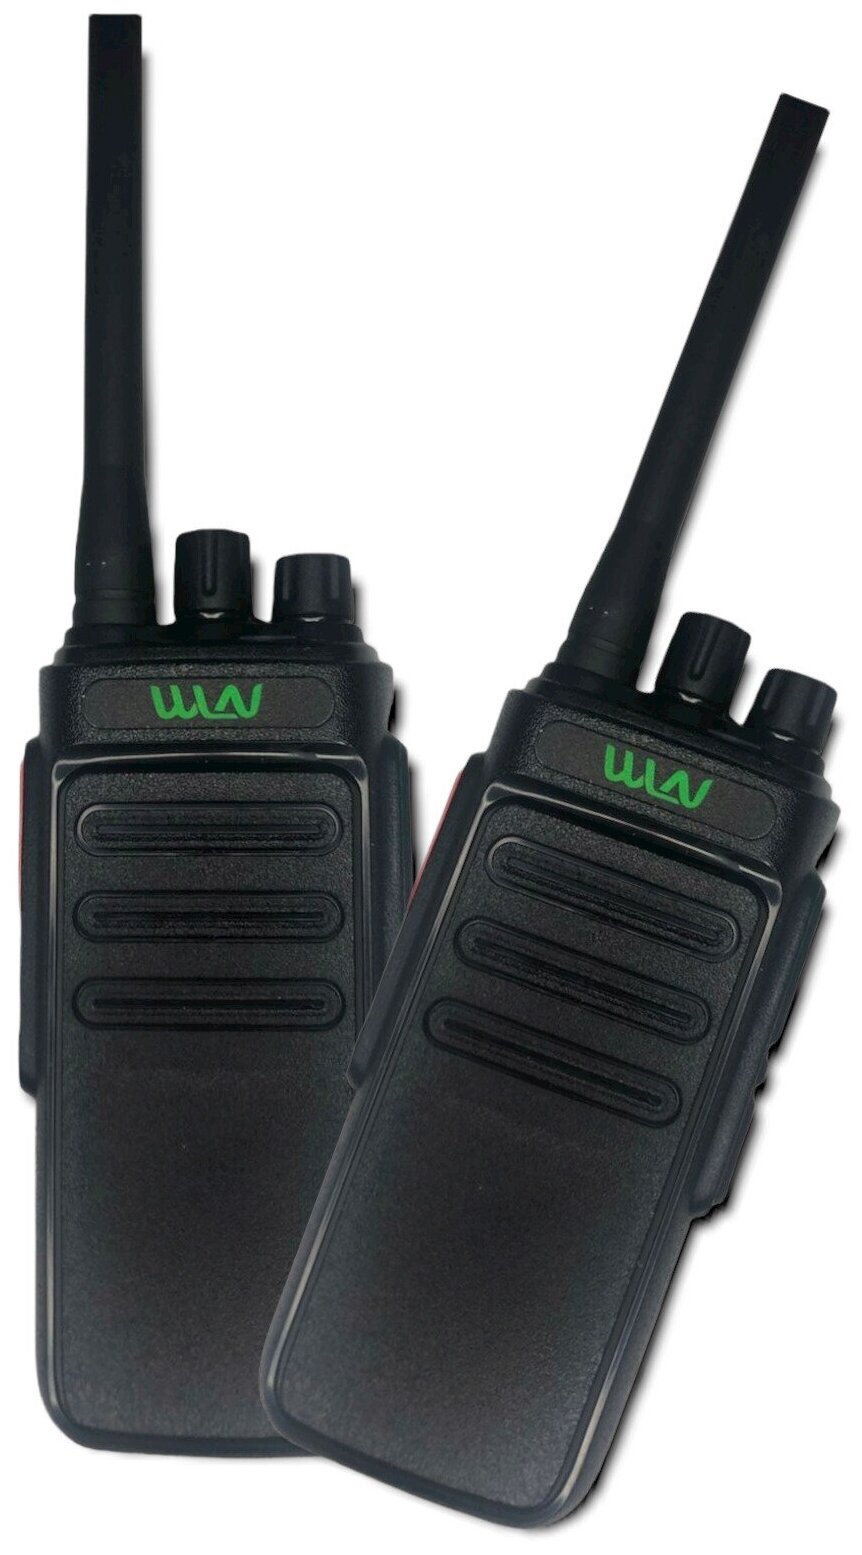 Комплект раций (радиостанций) WLN KD-C1000, мощность 10W, 2 шт.